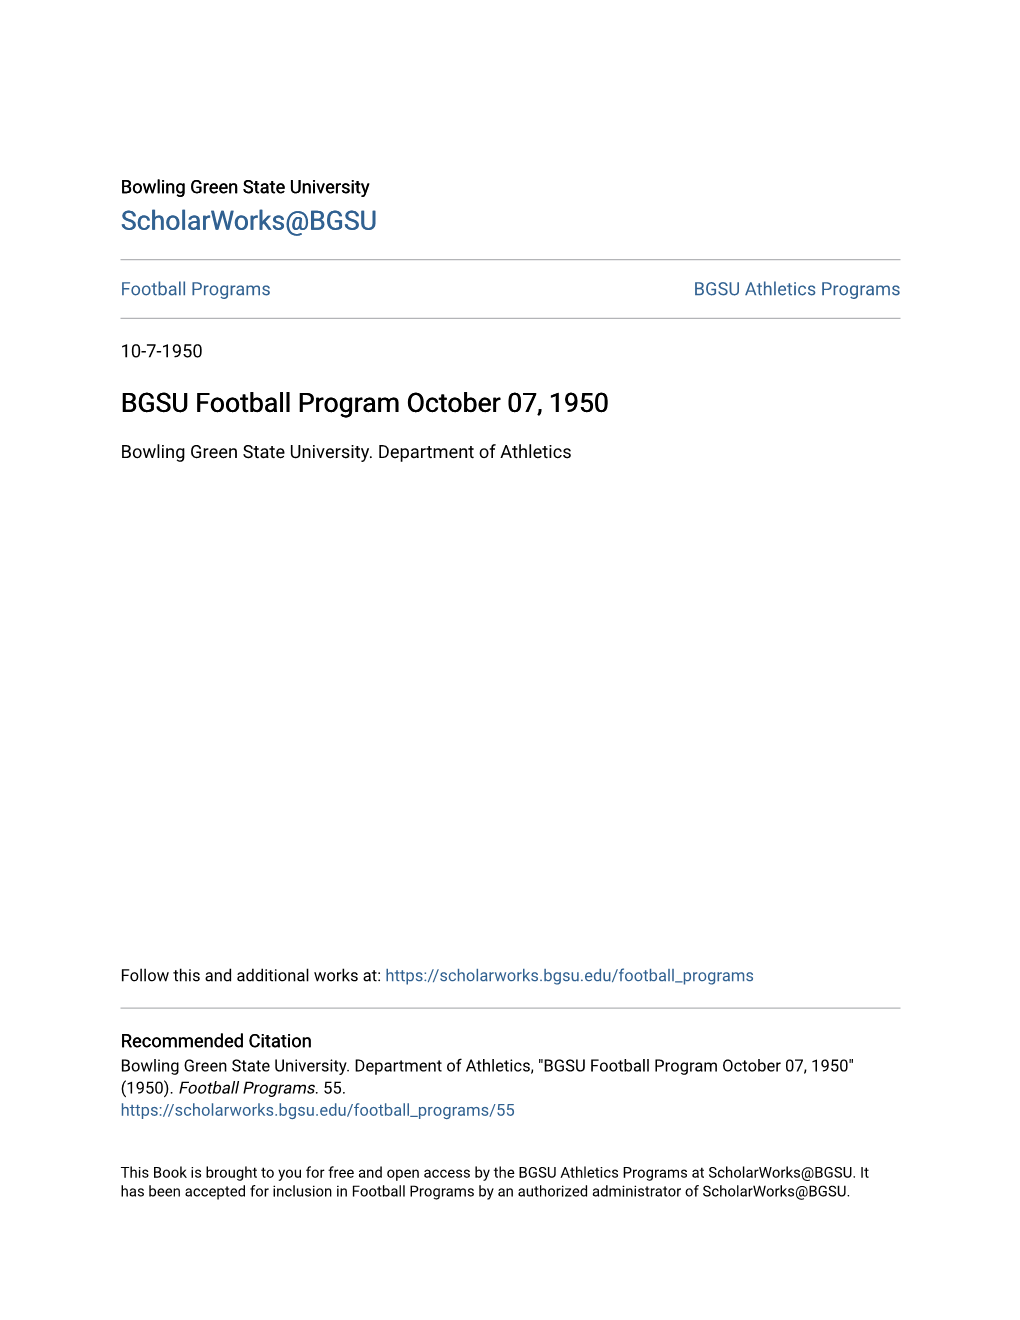 BGSU Football Program October 07, 1950